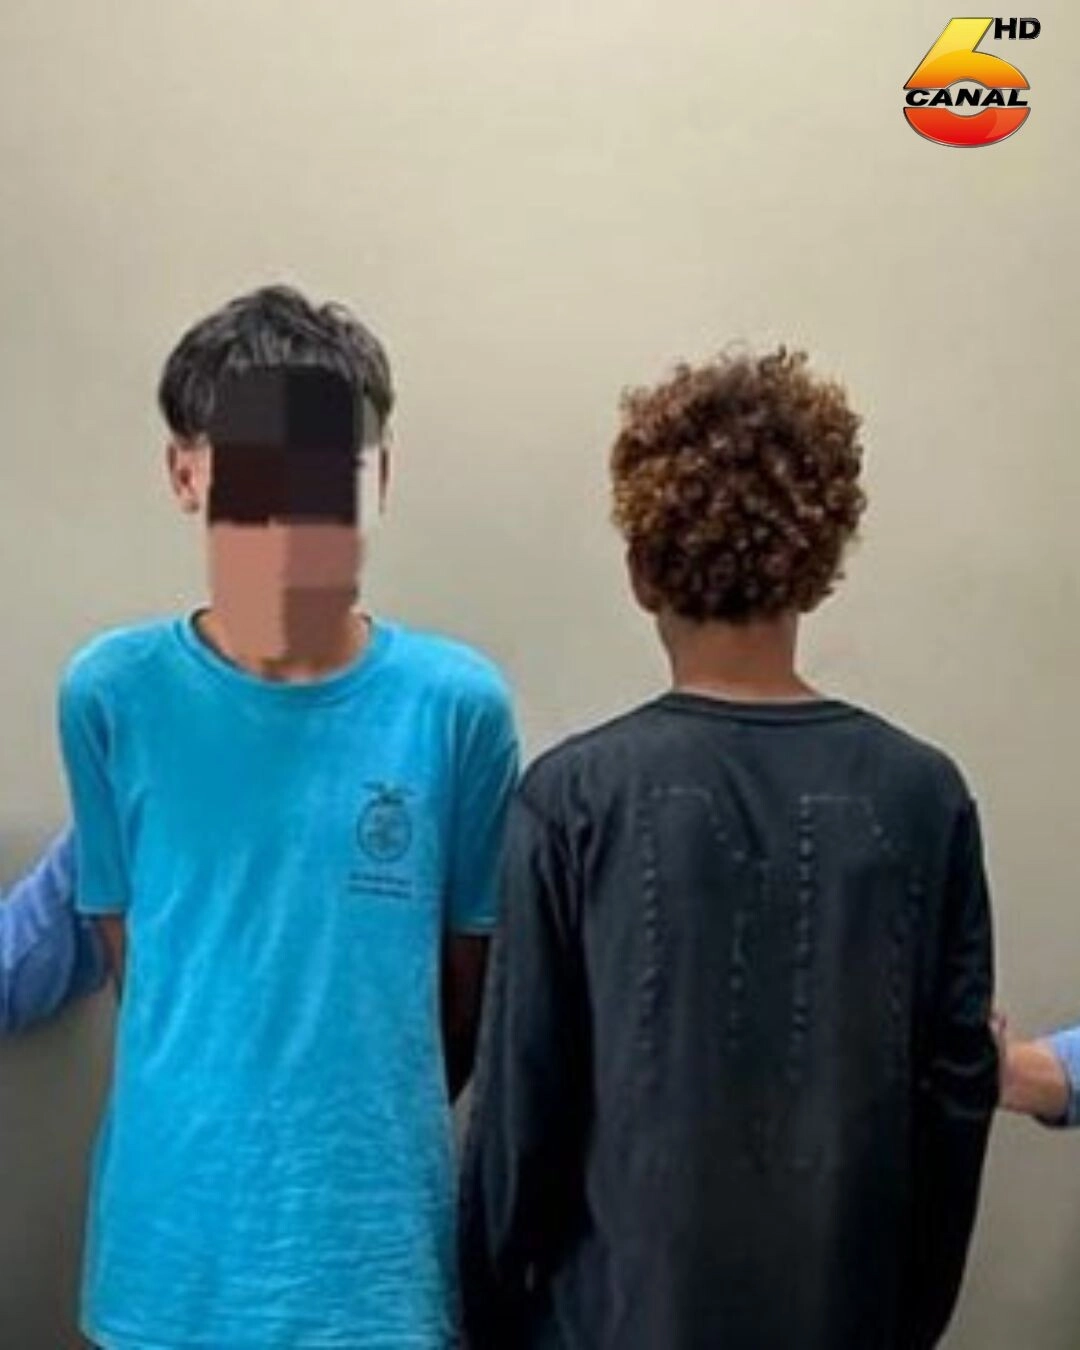 Joven de 15 años y su cómplice son aprehendidos como presuntos responsables del delito de robo en Olanchito, Yoro02